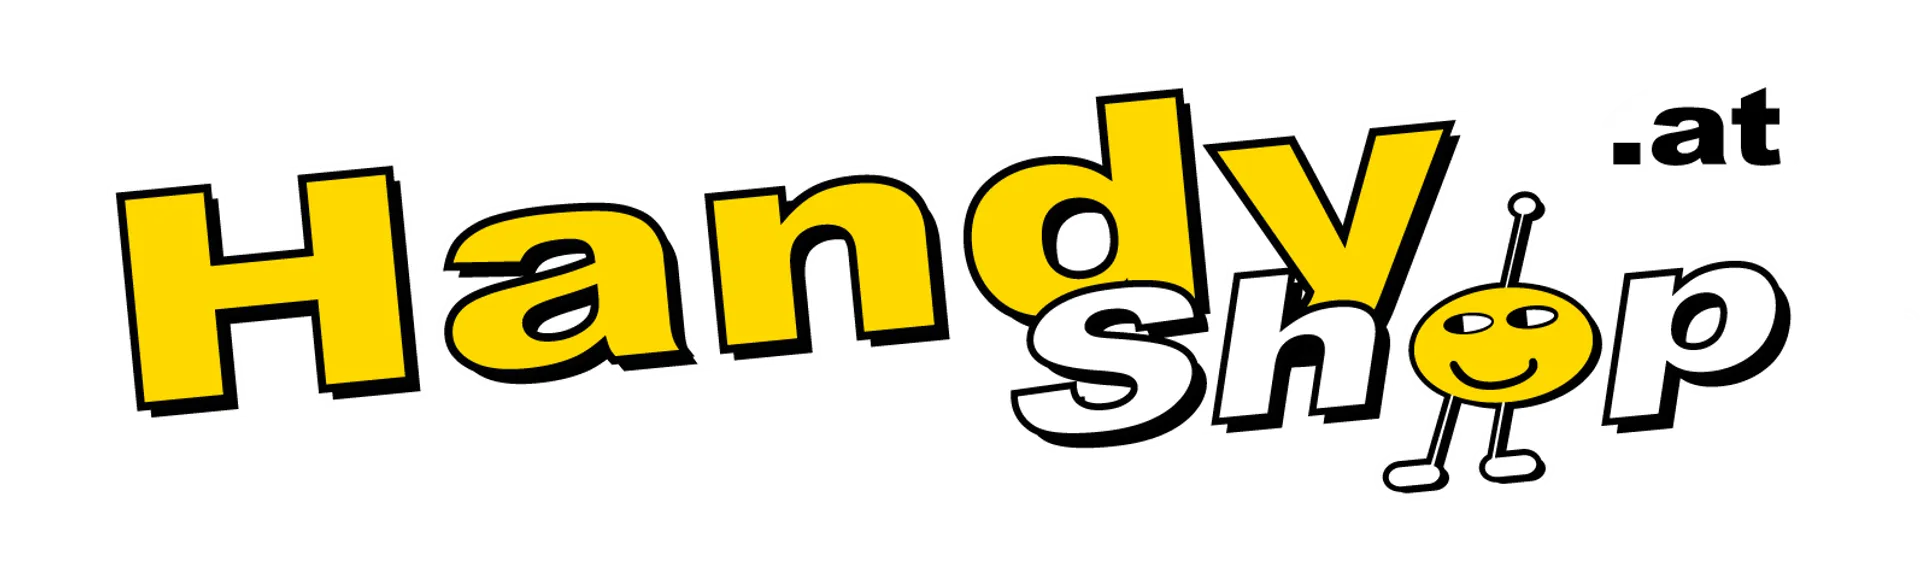 HANDYSHOP logo die aktuell Flugblatt